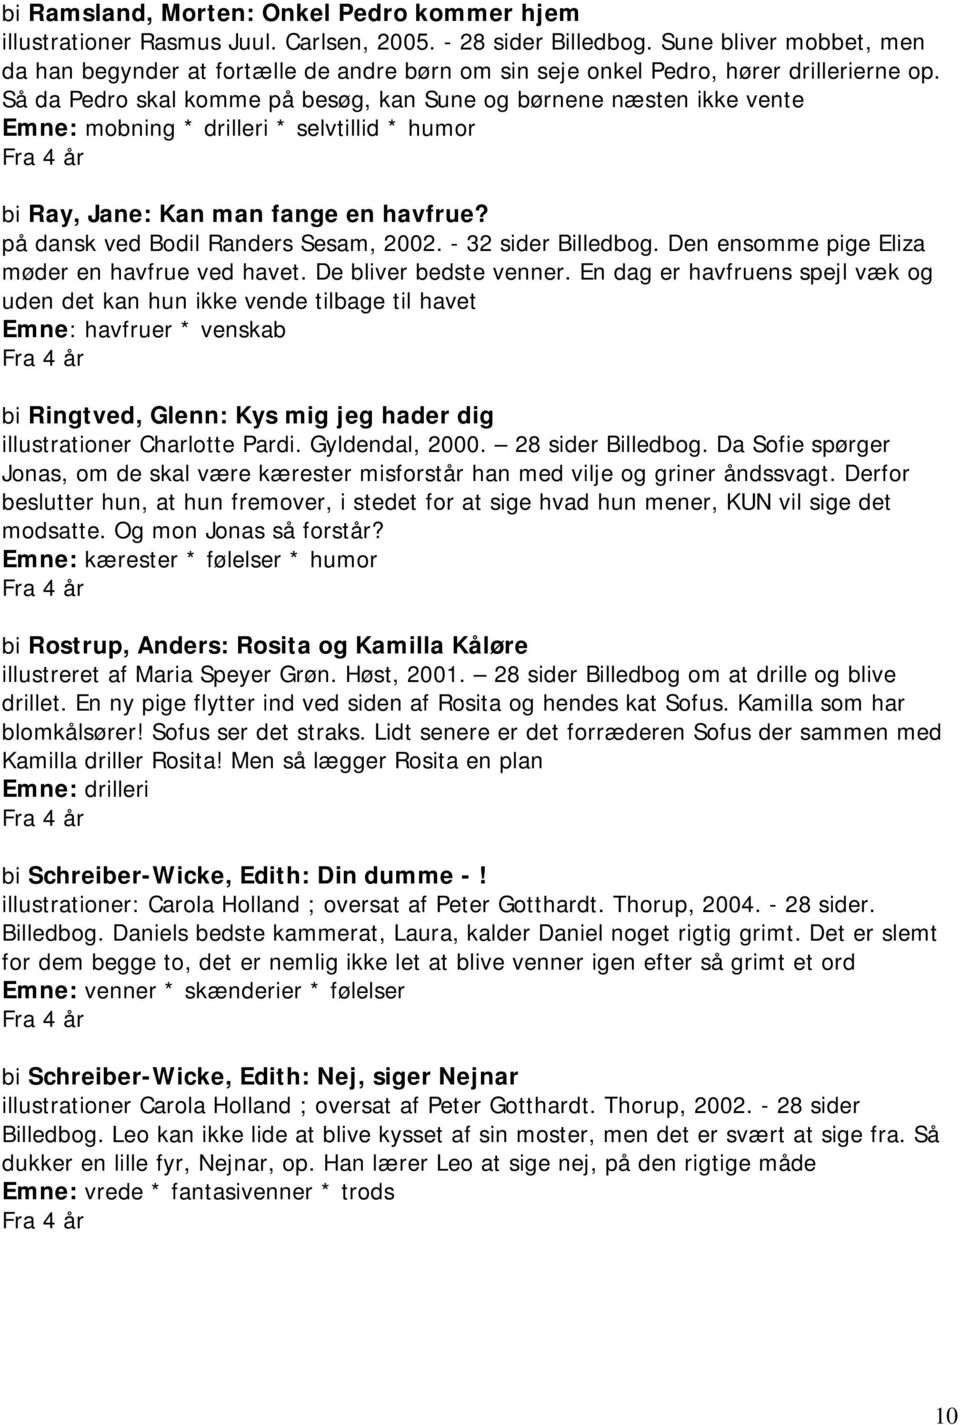 Så da Pedro skal komme på besøg, kan Sune og børnene næsten ikke vente Emne: mobning * drilleri * selvtillid * humor bi Ray, Jane: Kan man fange en havfrue? på dansk ved Bodil Randers Sesam, 2002.